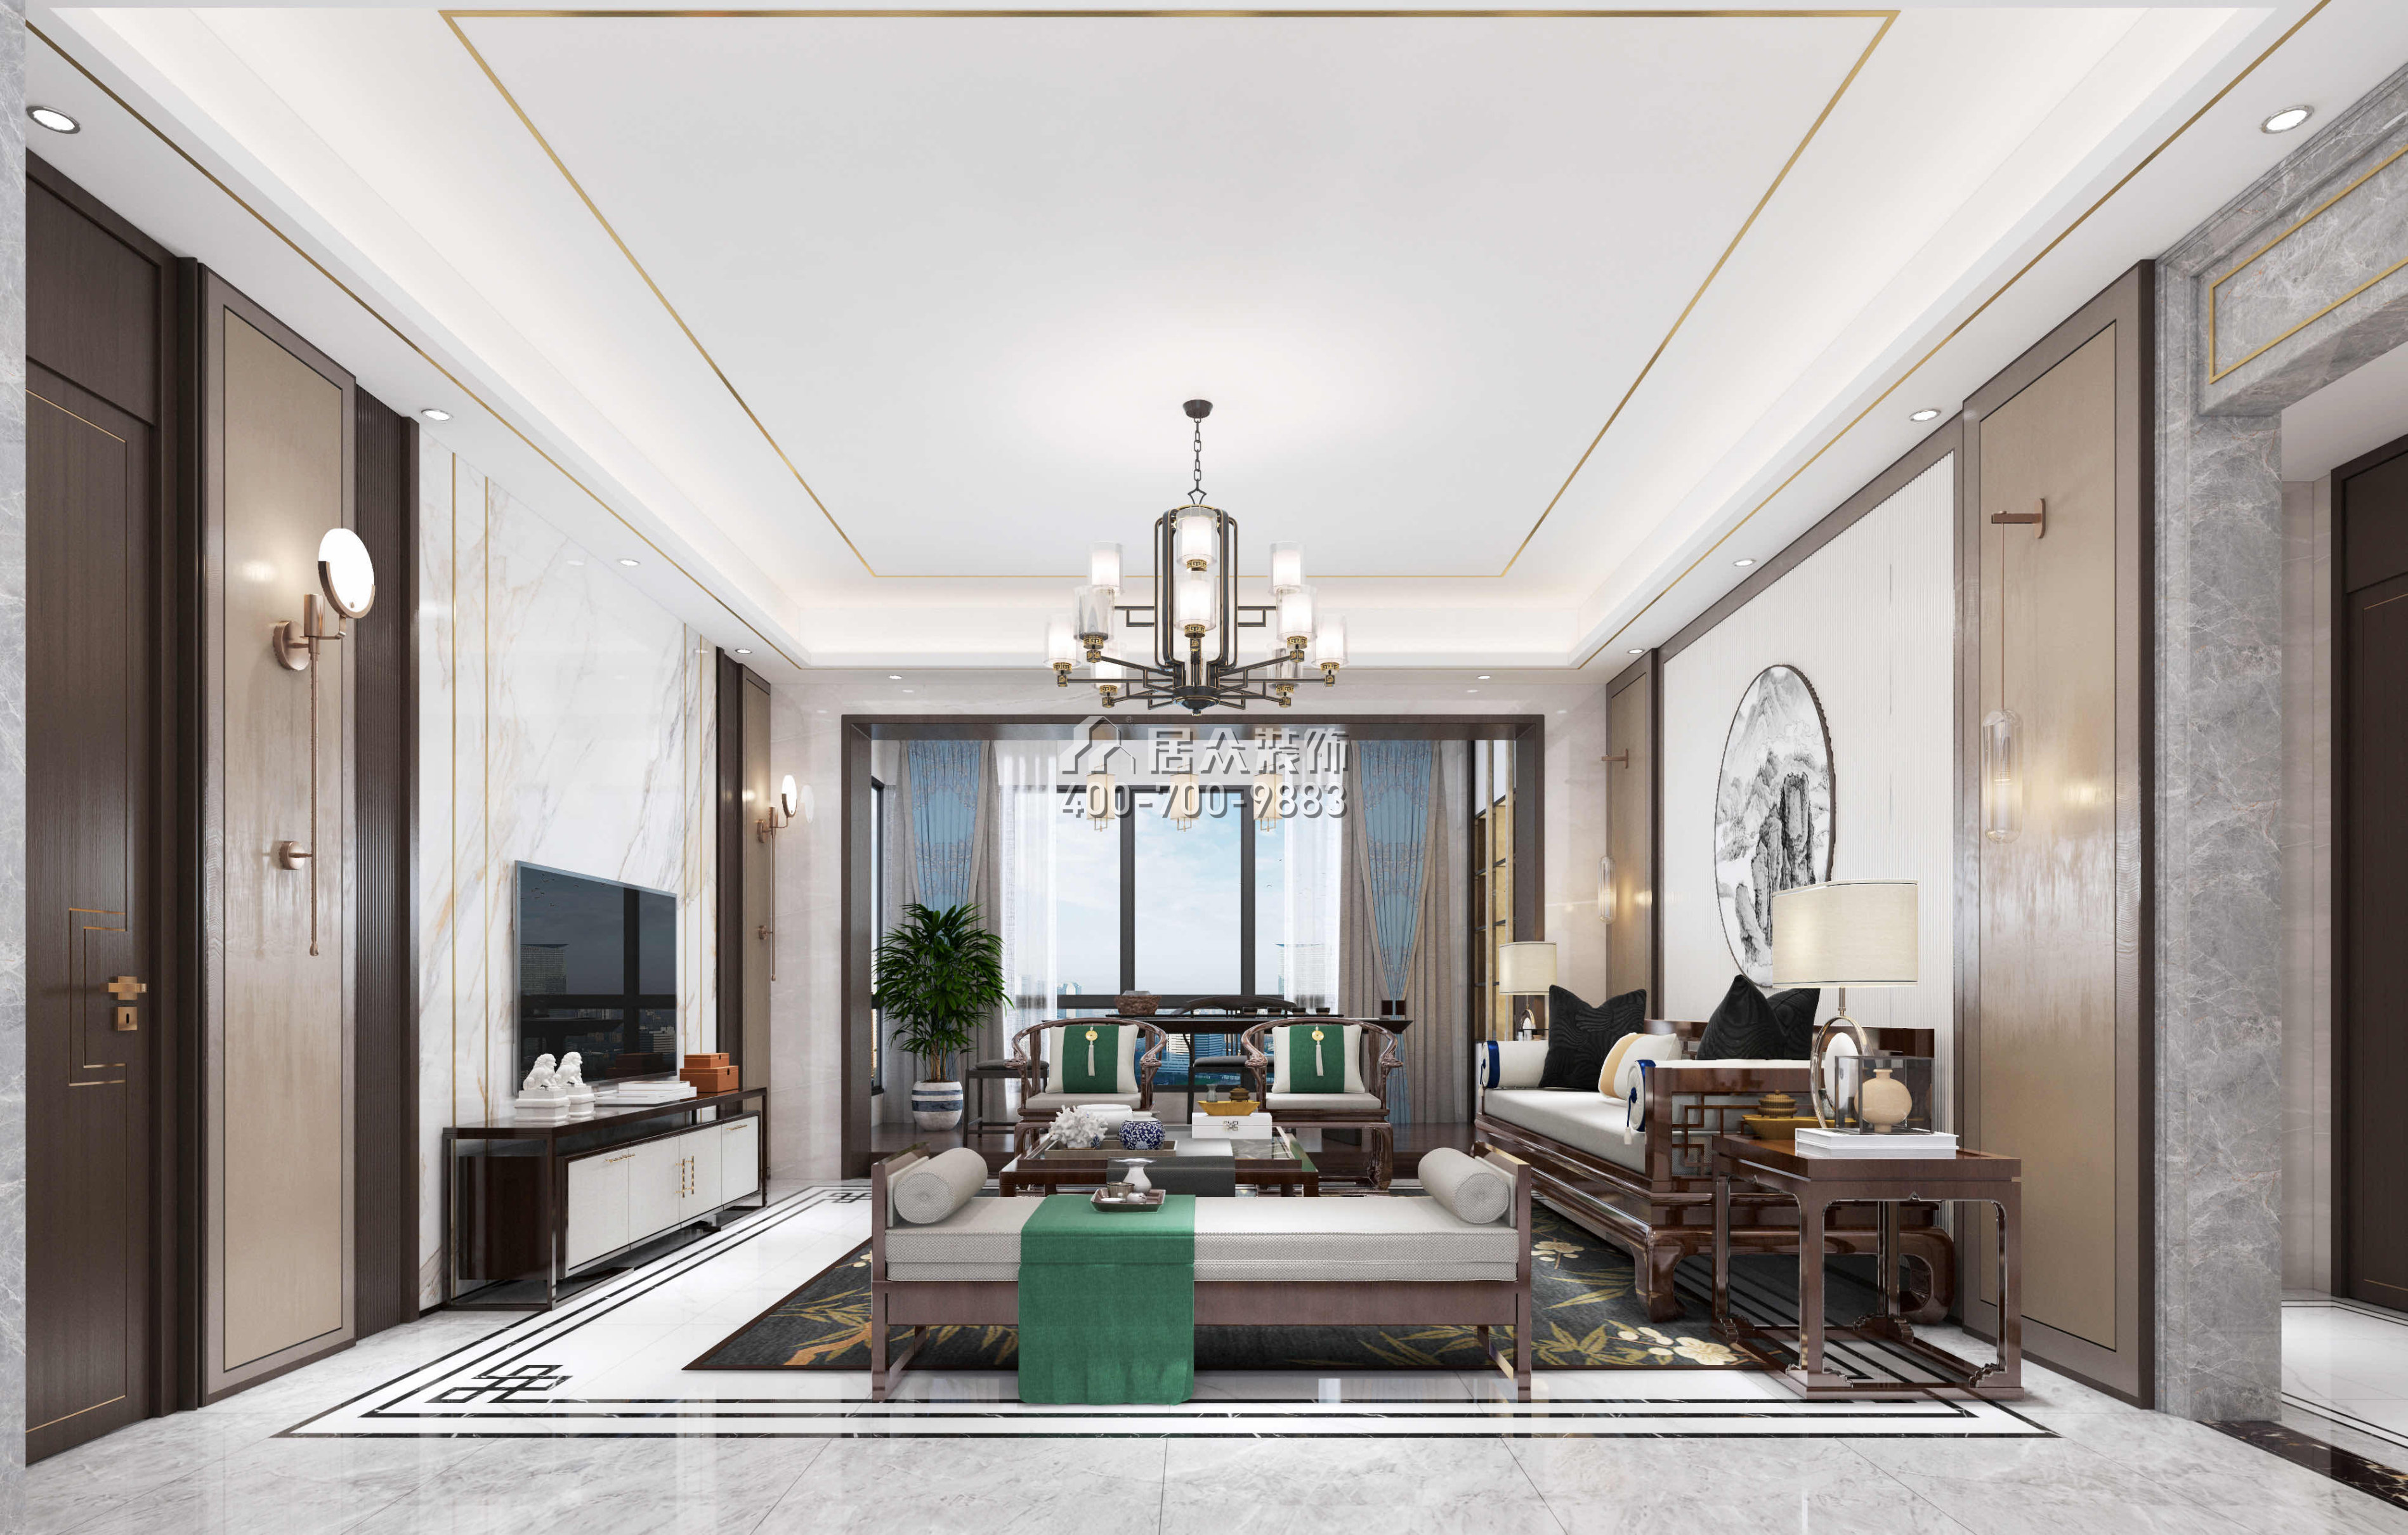 中惠沁林山庄300平方米中式风格复式户型客厅装修效果图